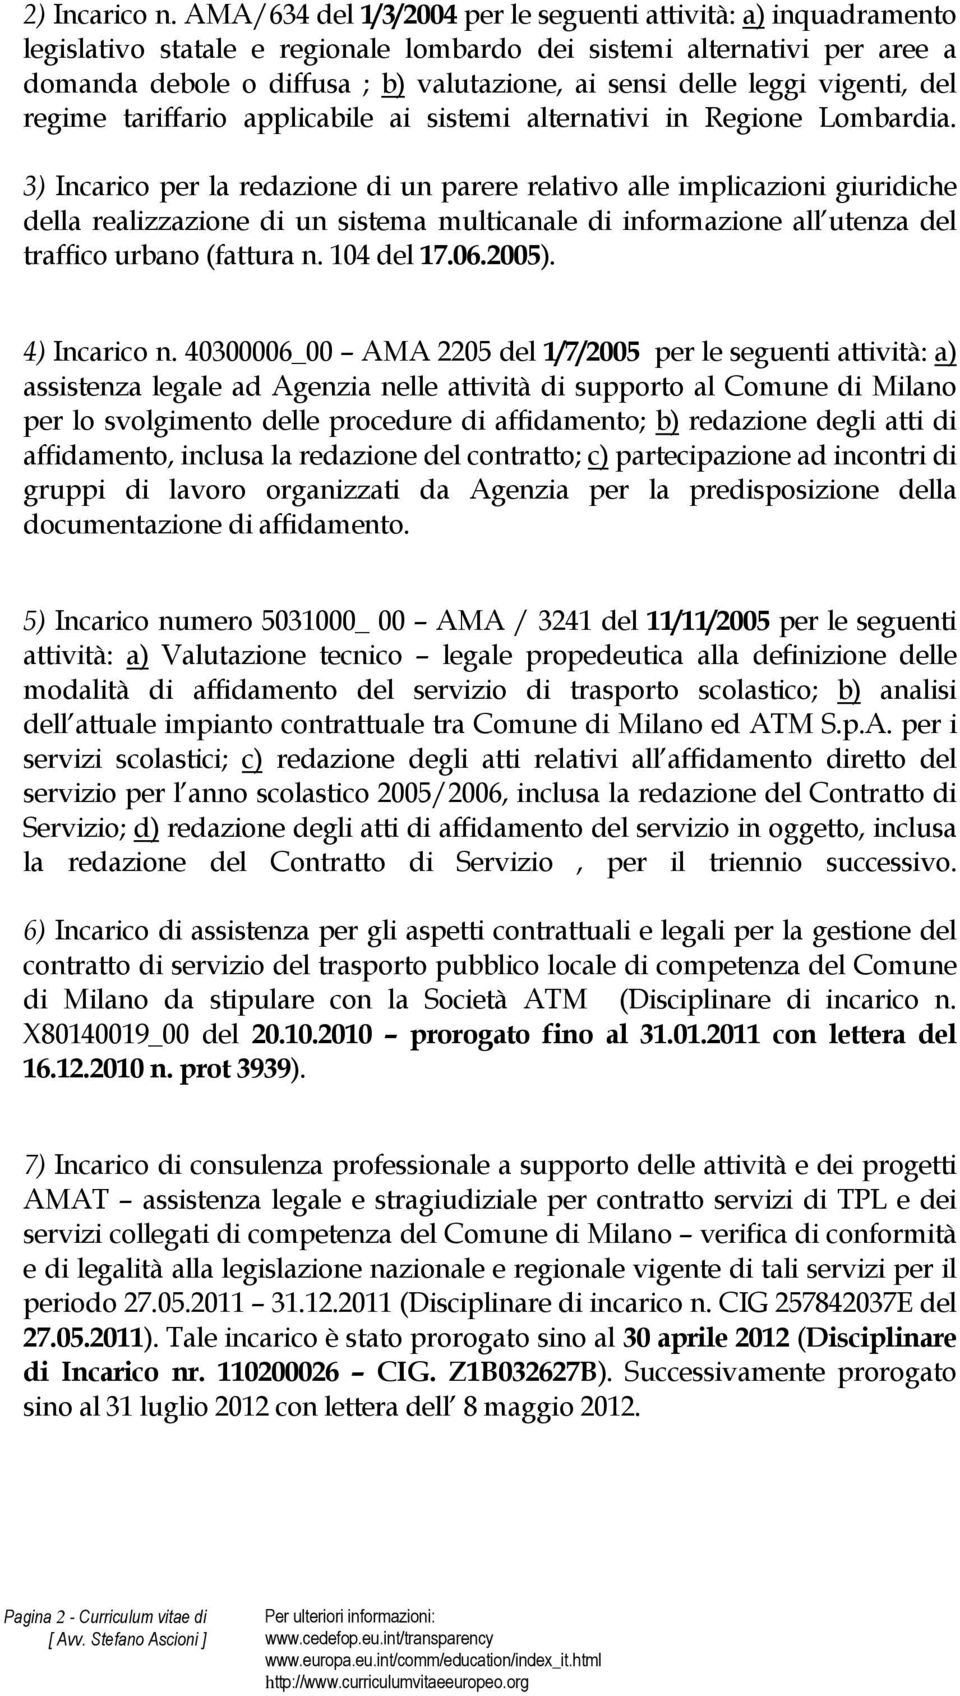 leggi vigenti, del regime tariffario applicabile ai sistemi alternativi in Regione Lombardia.